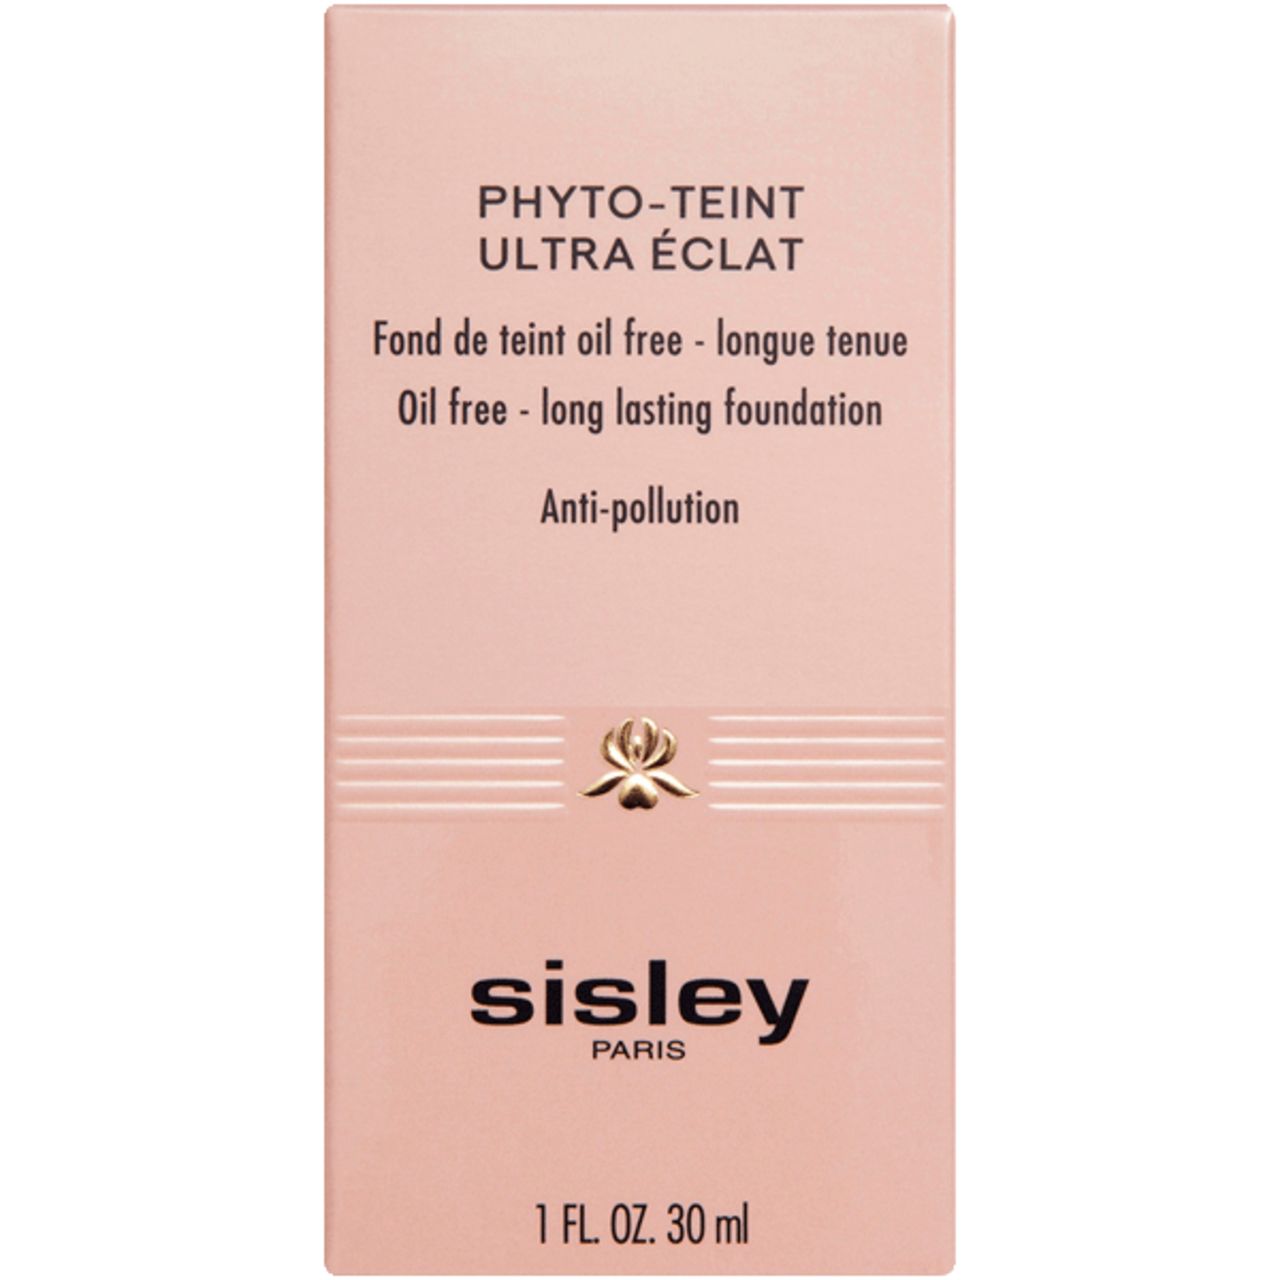 Sisley, Phyto-Teint Ultra Eclat